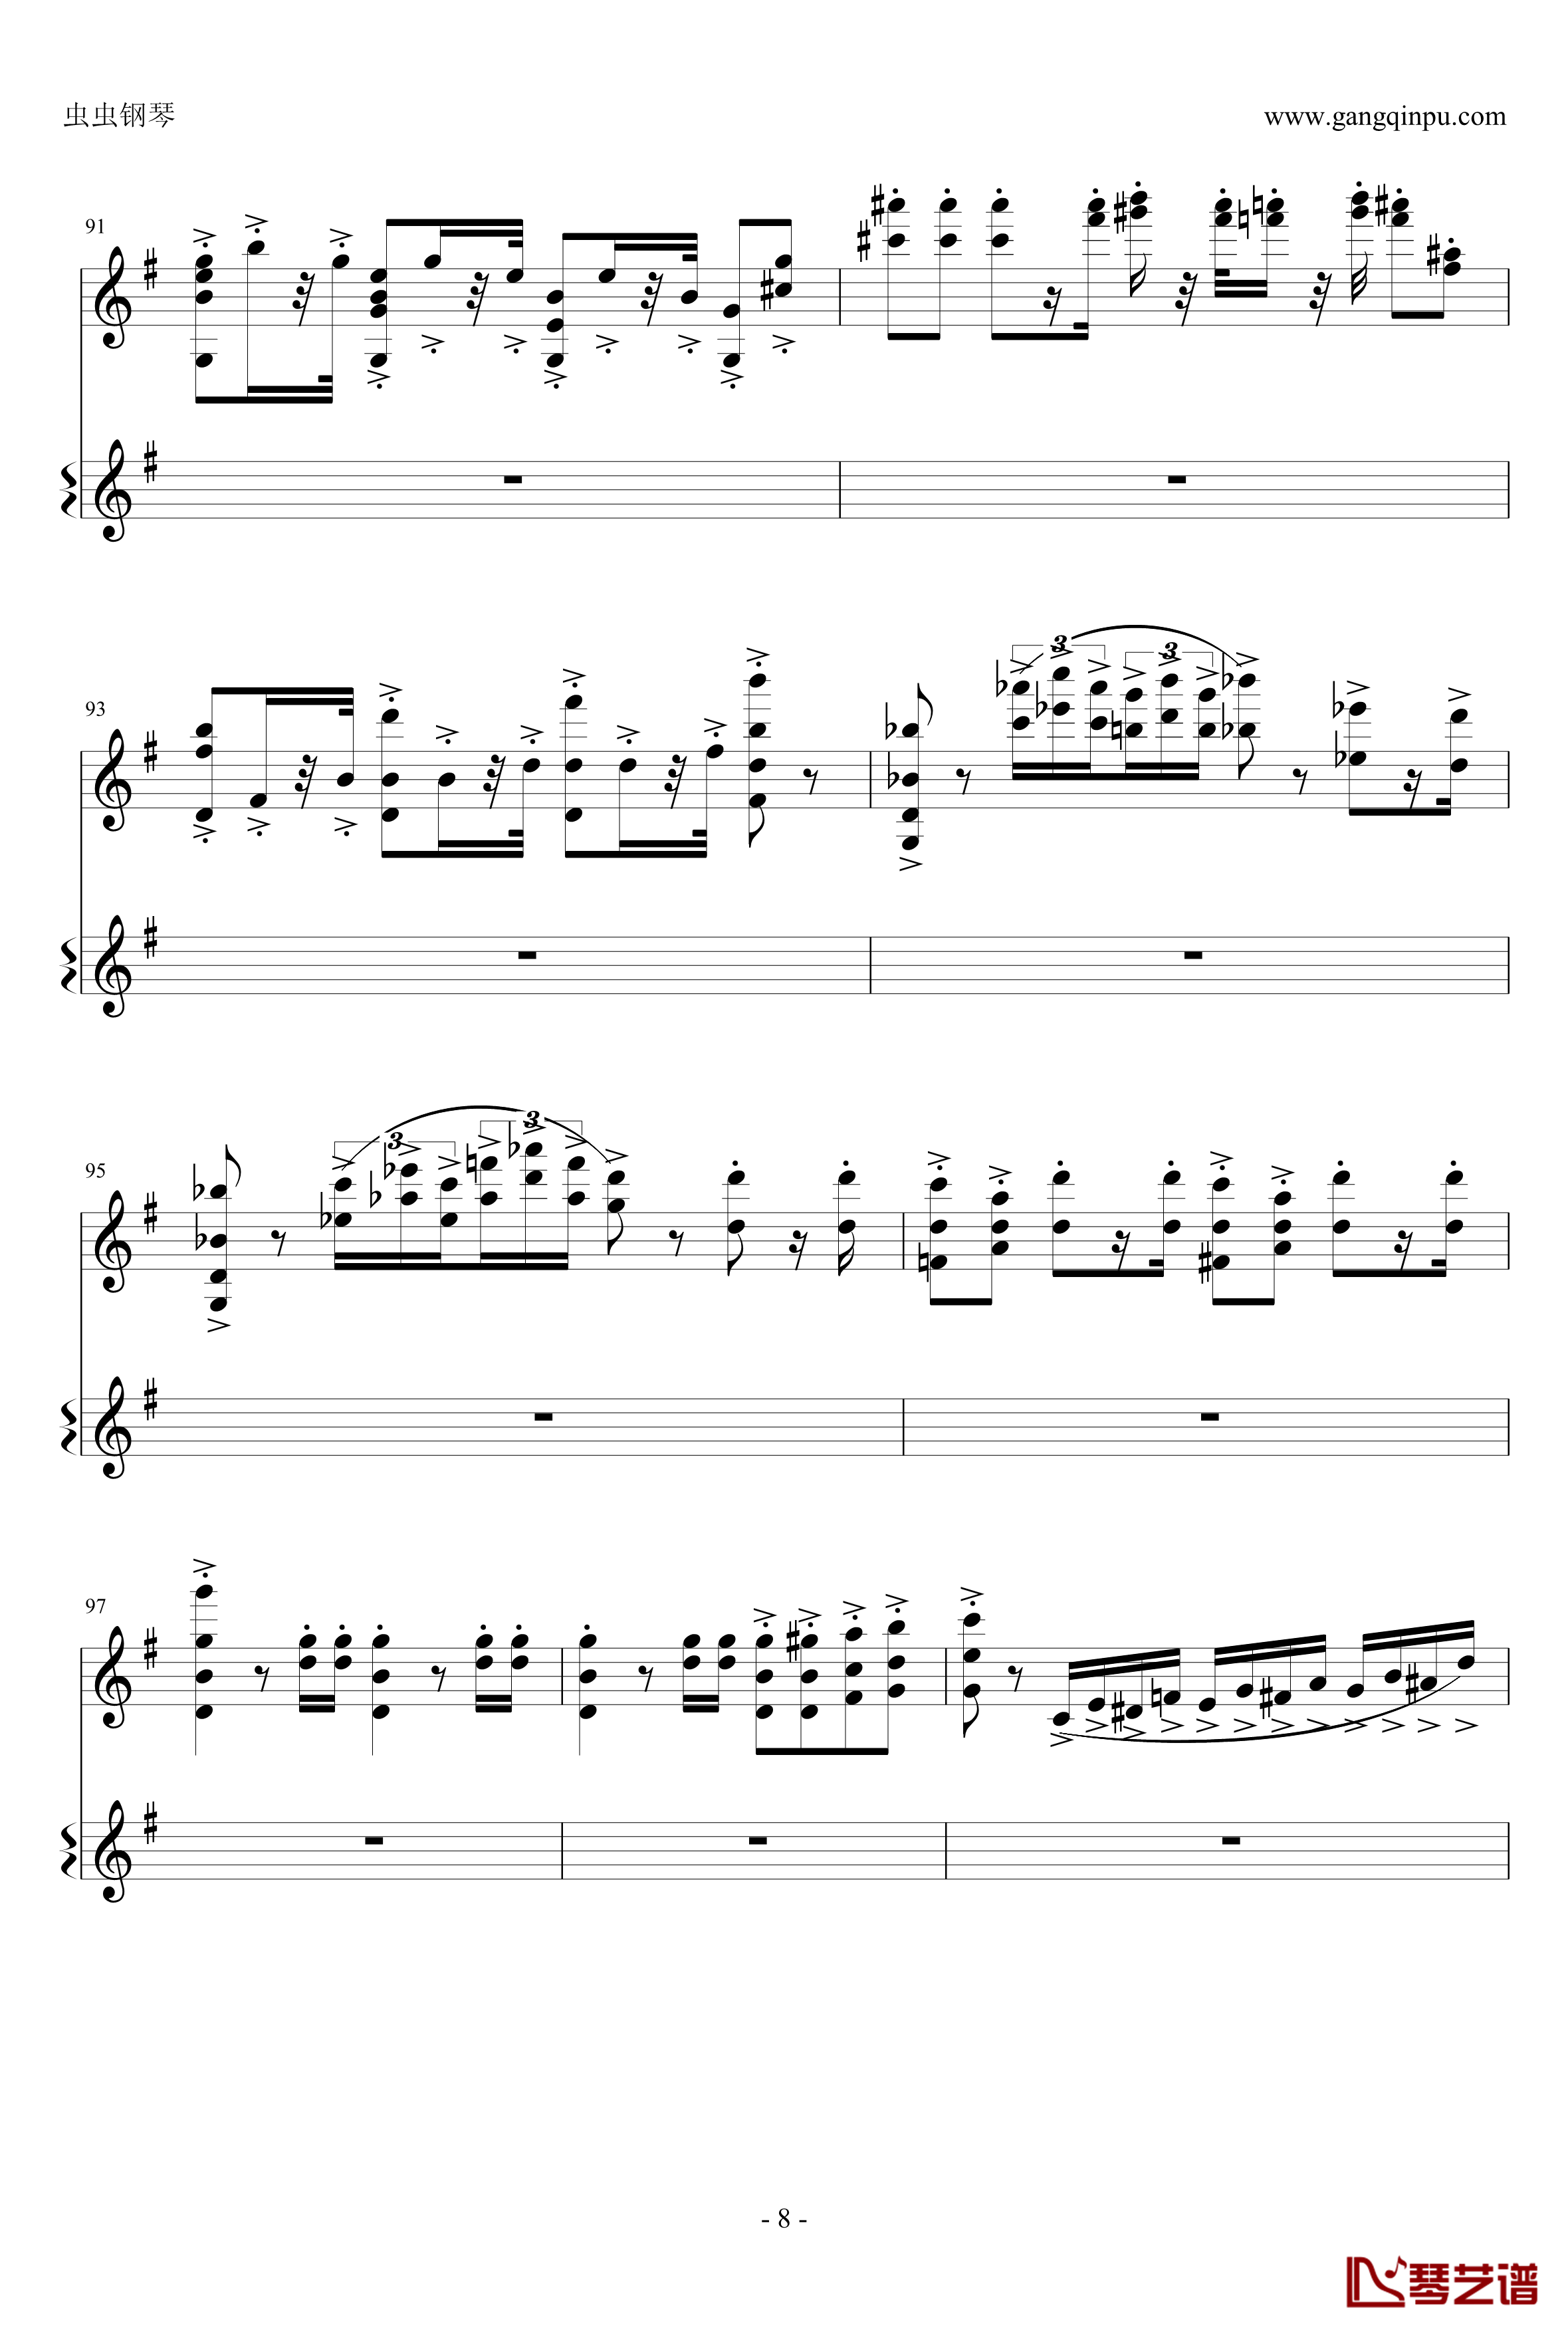 意大利国歌钢琴谱-变奏曲修改版-DXF8